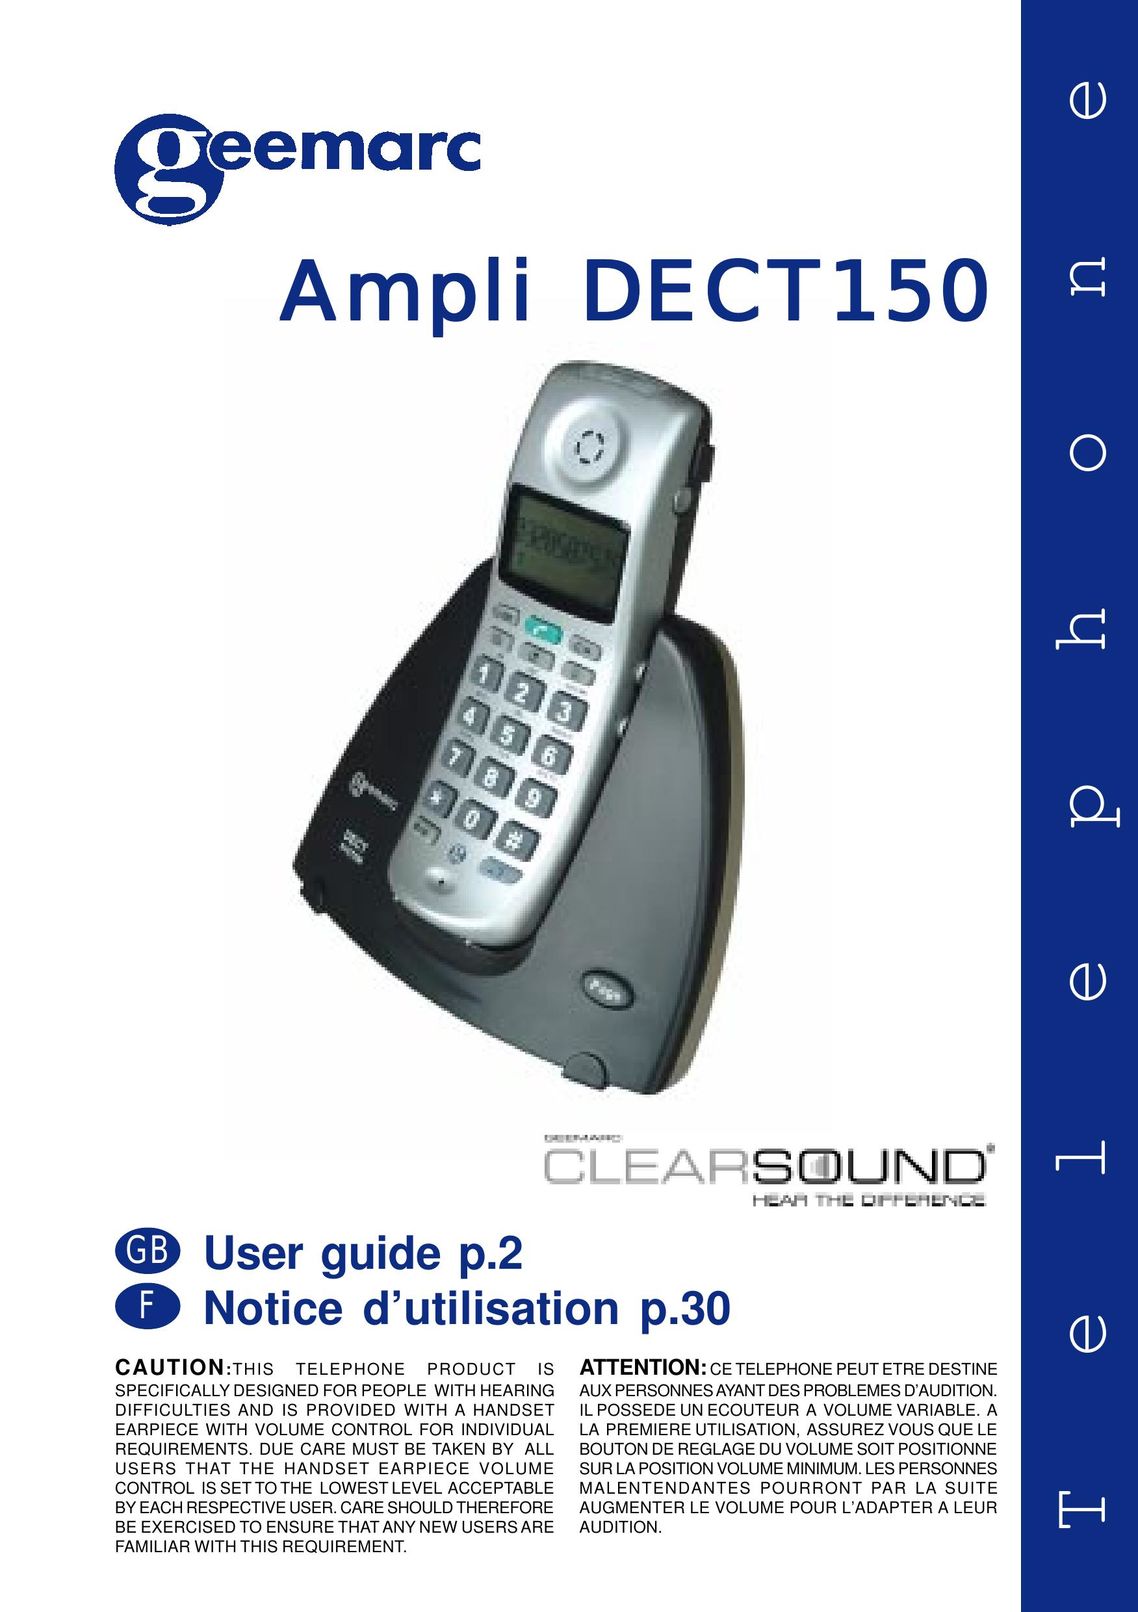 Geemarc Ampli DECT150 Telephone User Manual